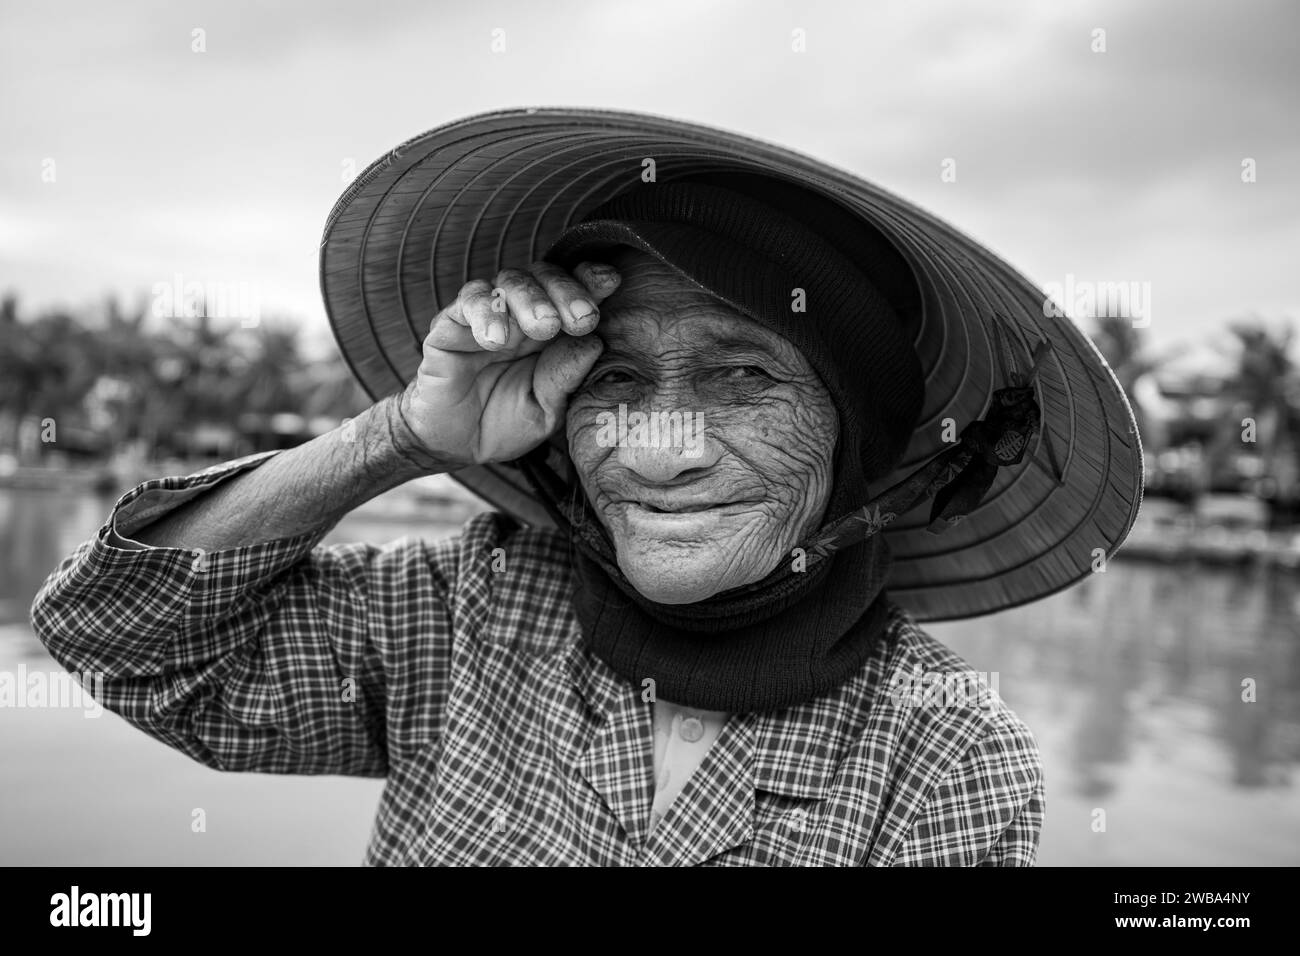 Vieille femme du Vietnam avec chapeau de paille Banque D'Images